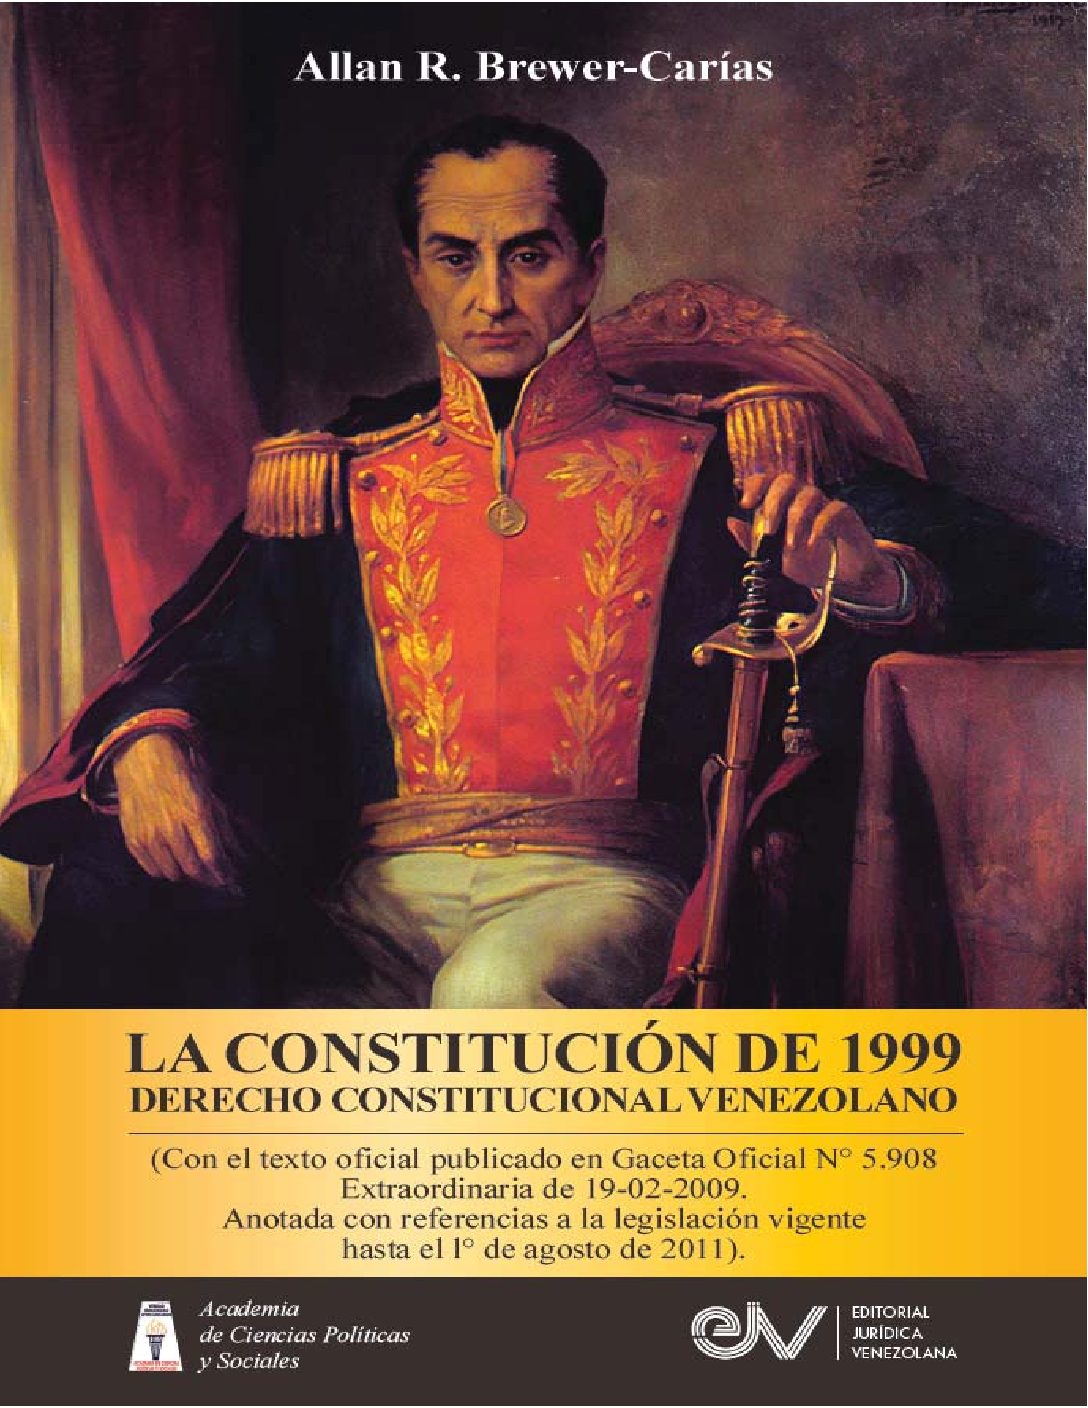 La Constitución de 1999. Derecho constitucional venezolano. Autor: Allan R. Brewer-Carías